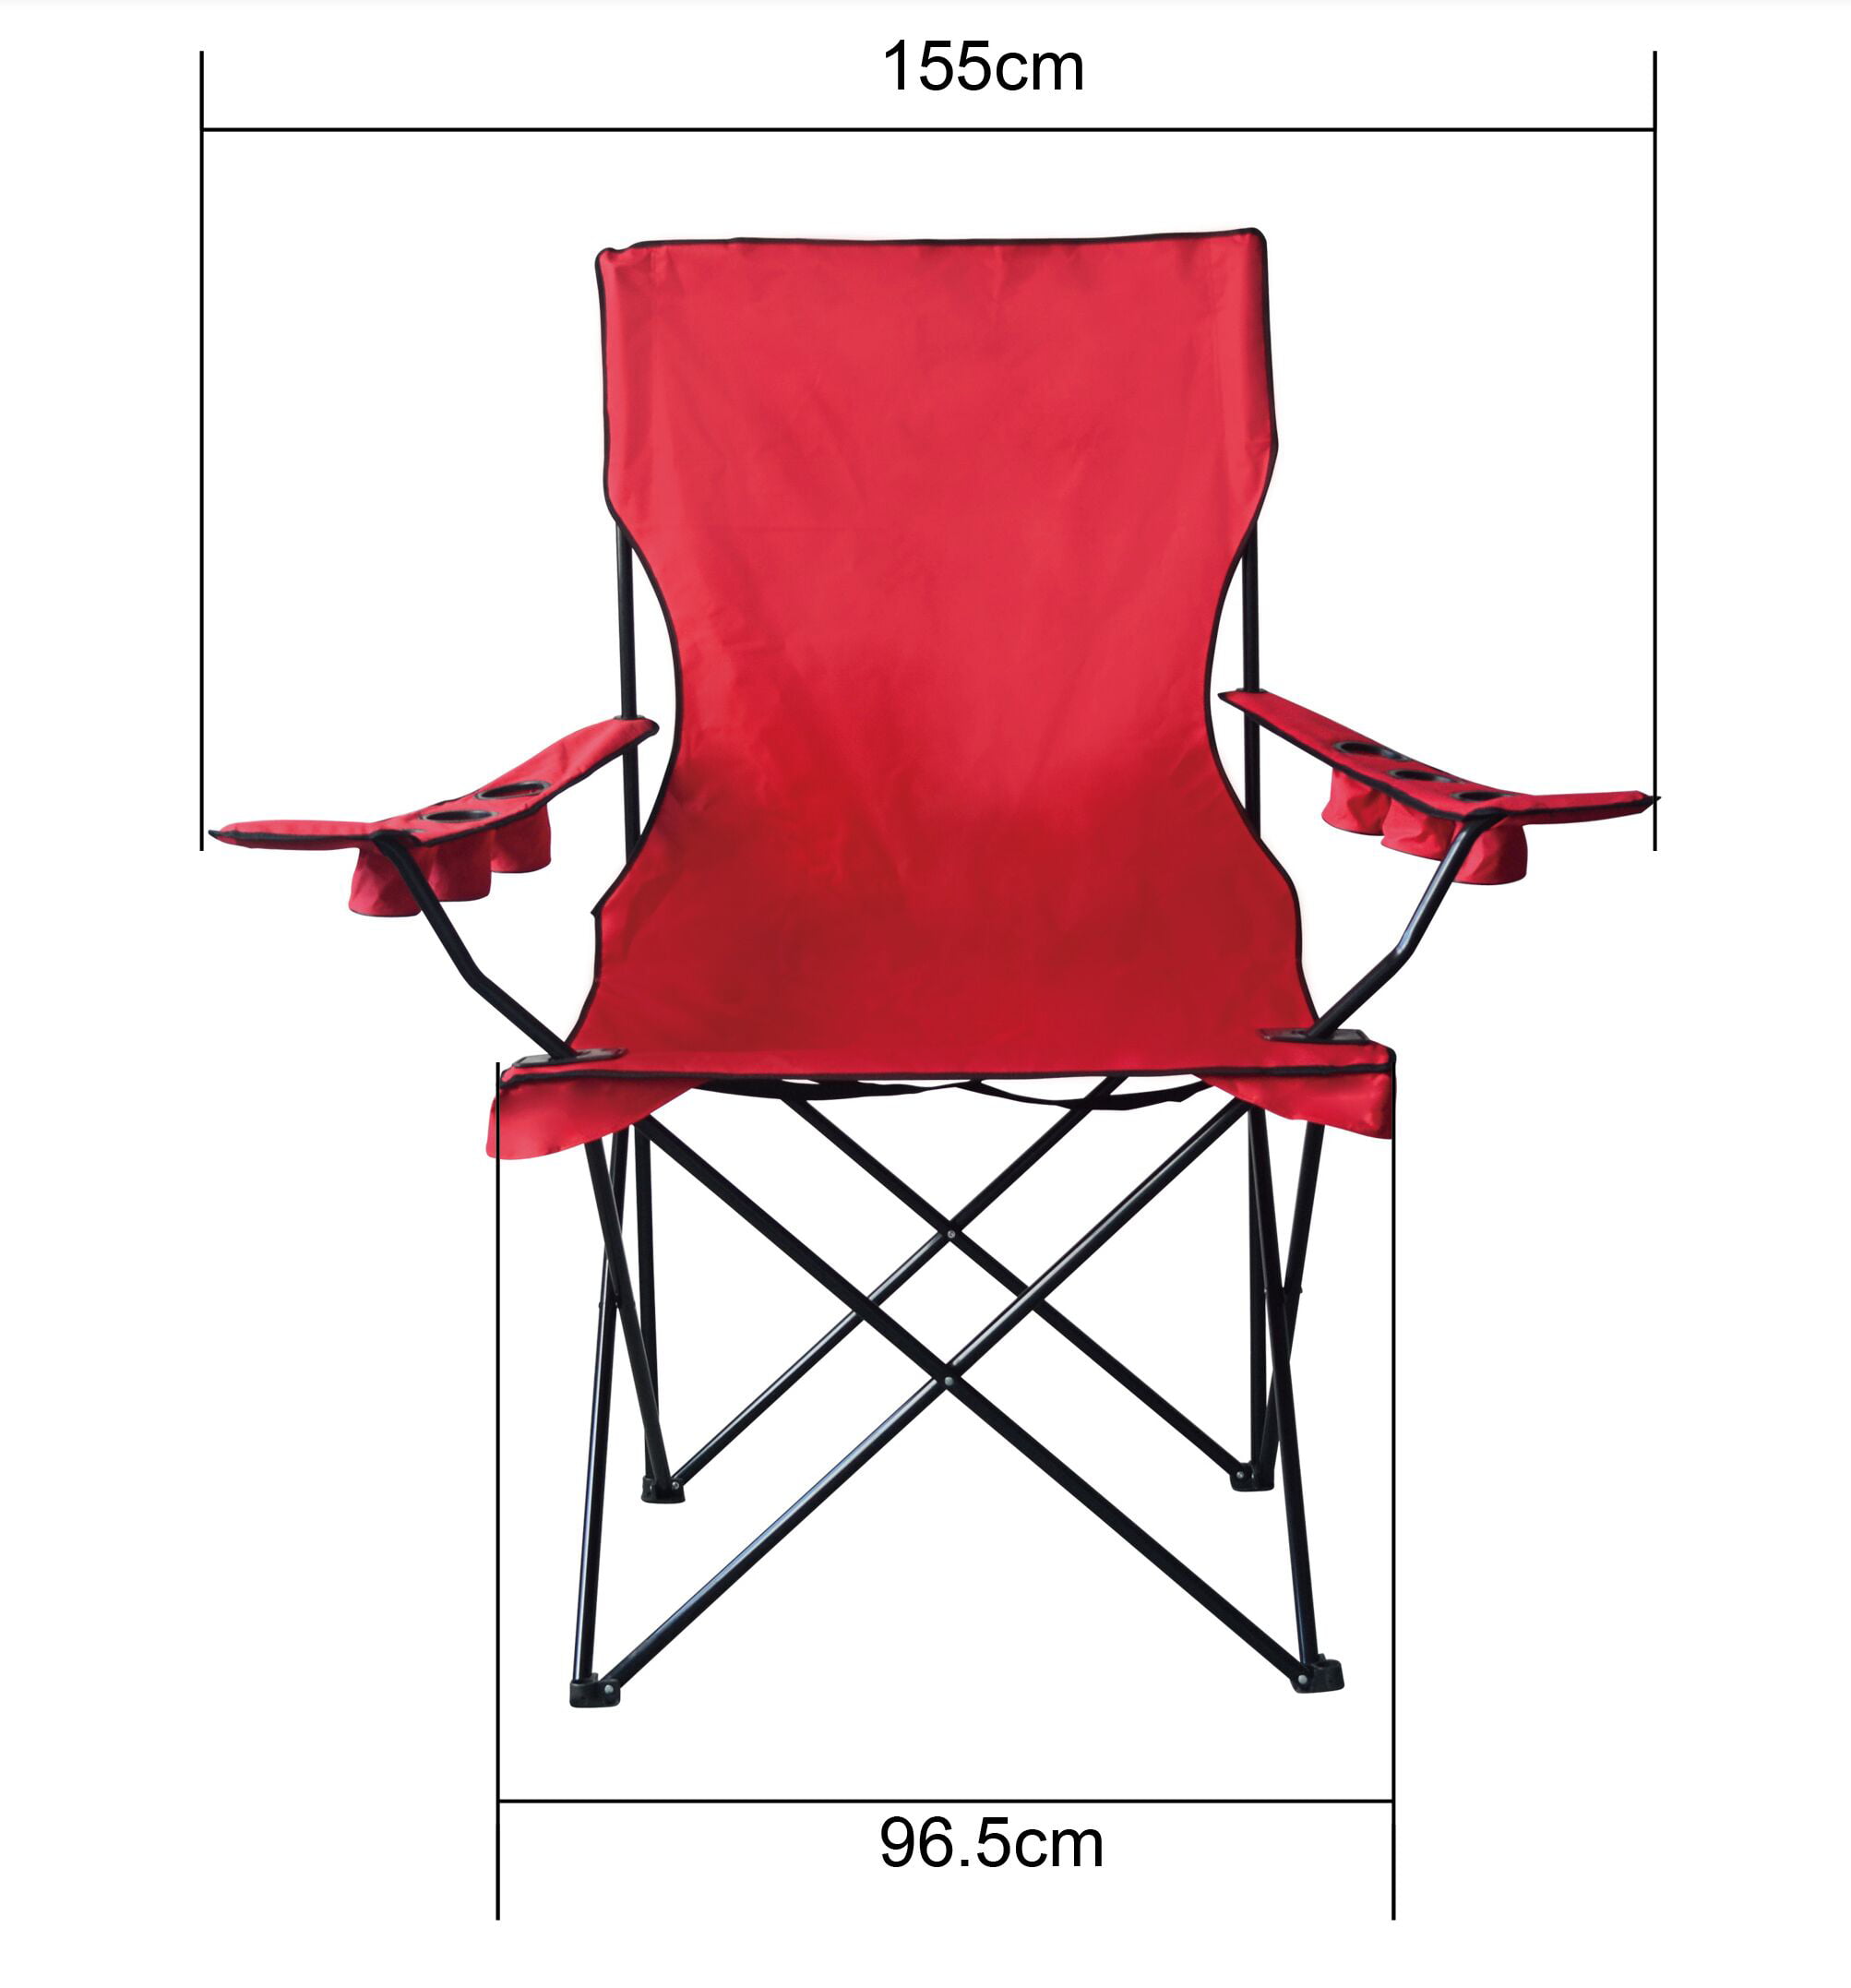 jumbo camping chair